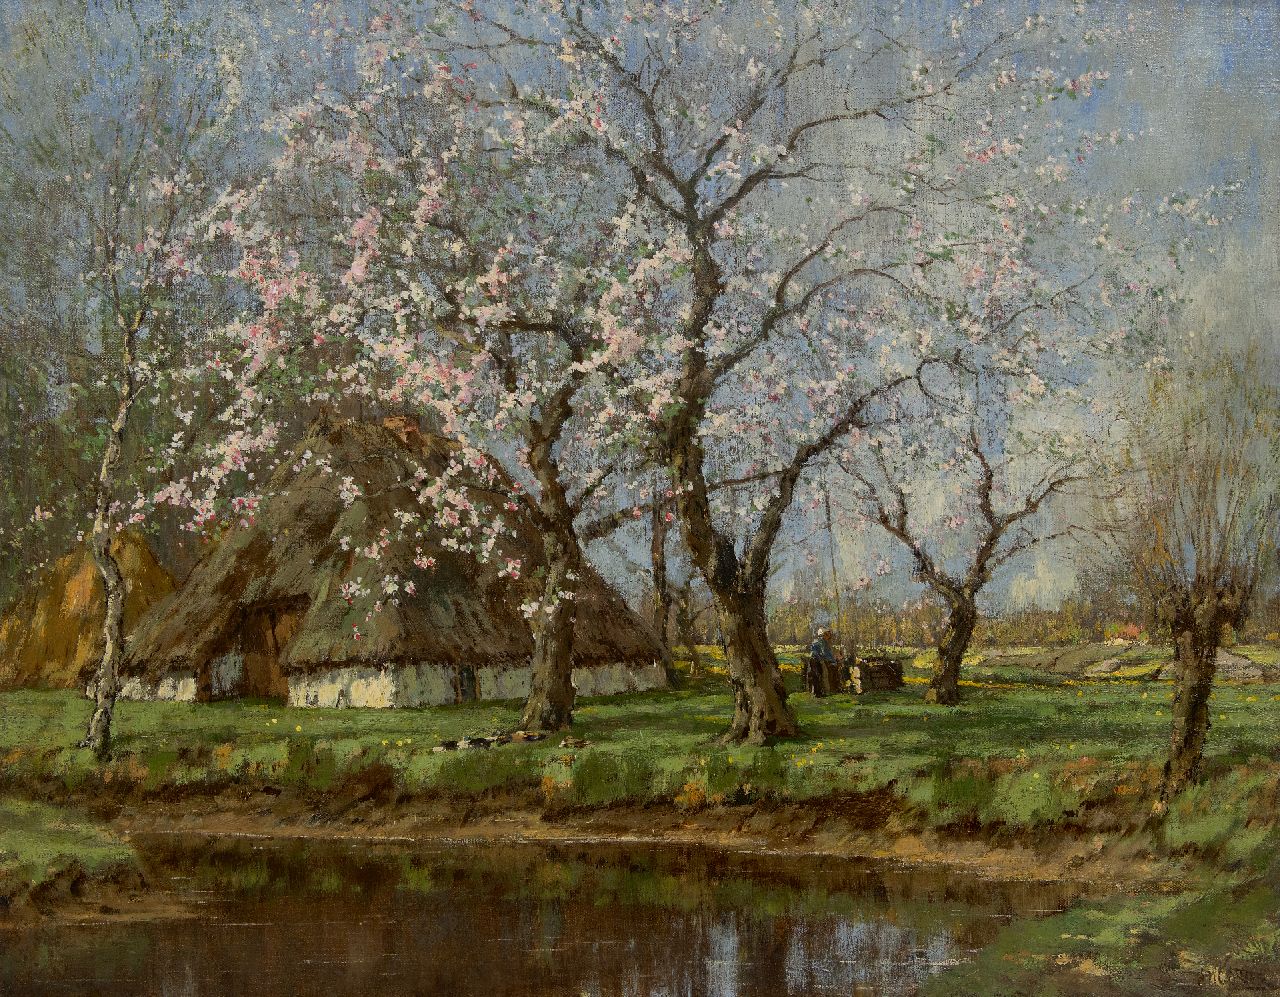 Gorter A.M.  | 'Arnold' Marc Gorter | Schilderijen te koop aangeboden | Voorjaar bij de boerderij met  boerin bij waterpomp, olieverf op doek 62,6 x 79,4 cm, gesigneerd rechtsonder